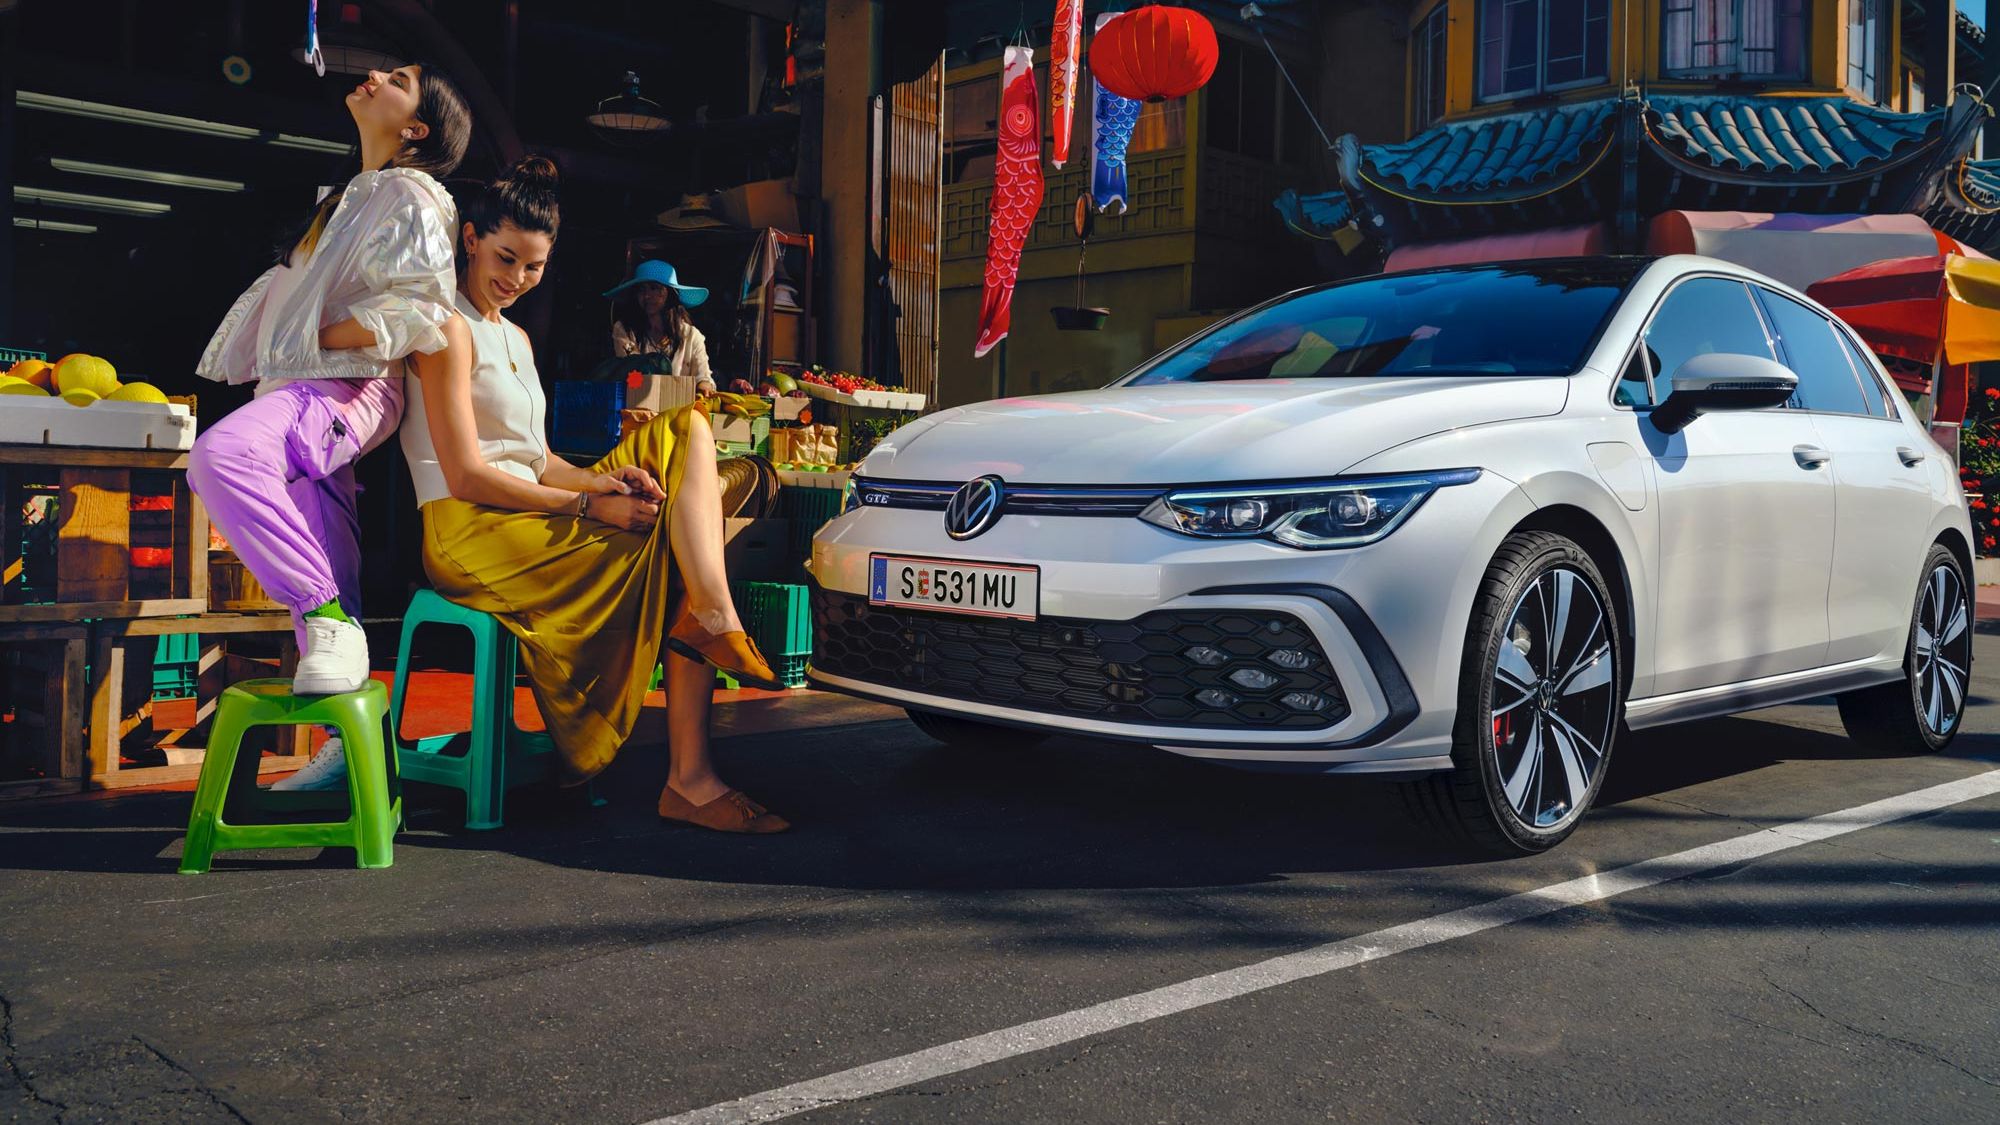 VW Golf GTE steht in Innenstadt mit asiatischen Elementen vor einem Gemüsestand, daneben sitzen zwei junge Frauen.